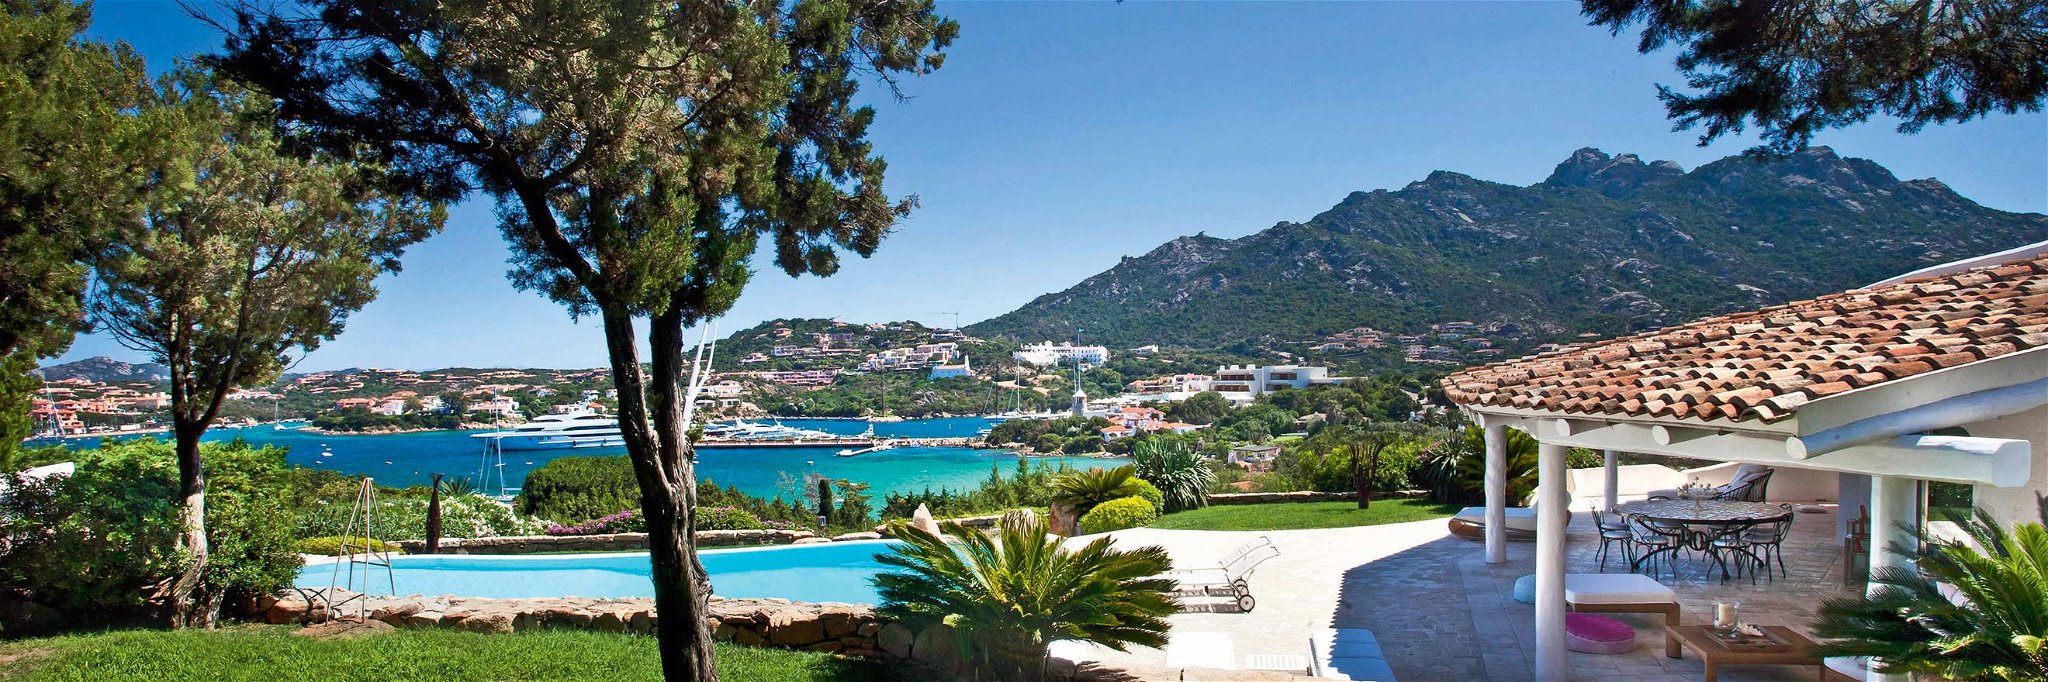 Interieur und Exterieur in perfektem Einklang: Villa an der Costa Smeralda auf Sardinien